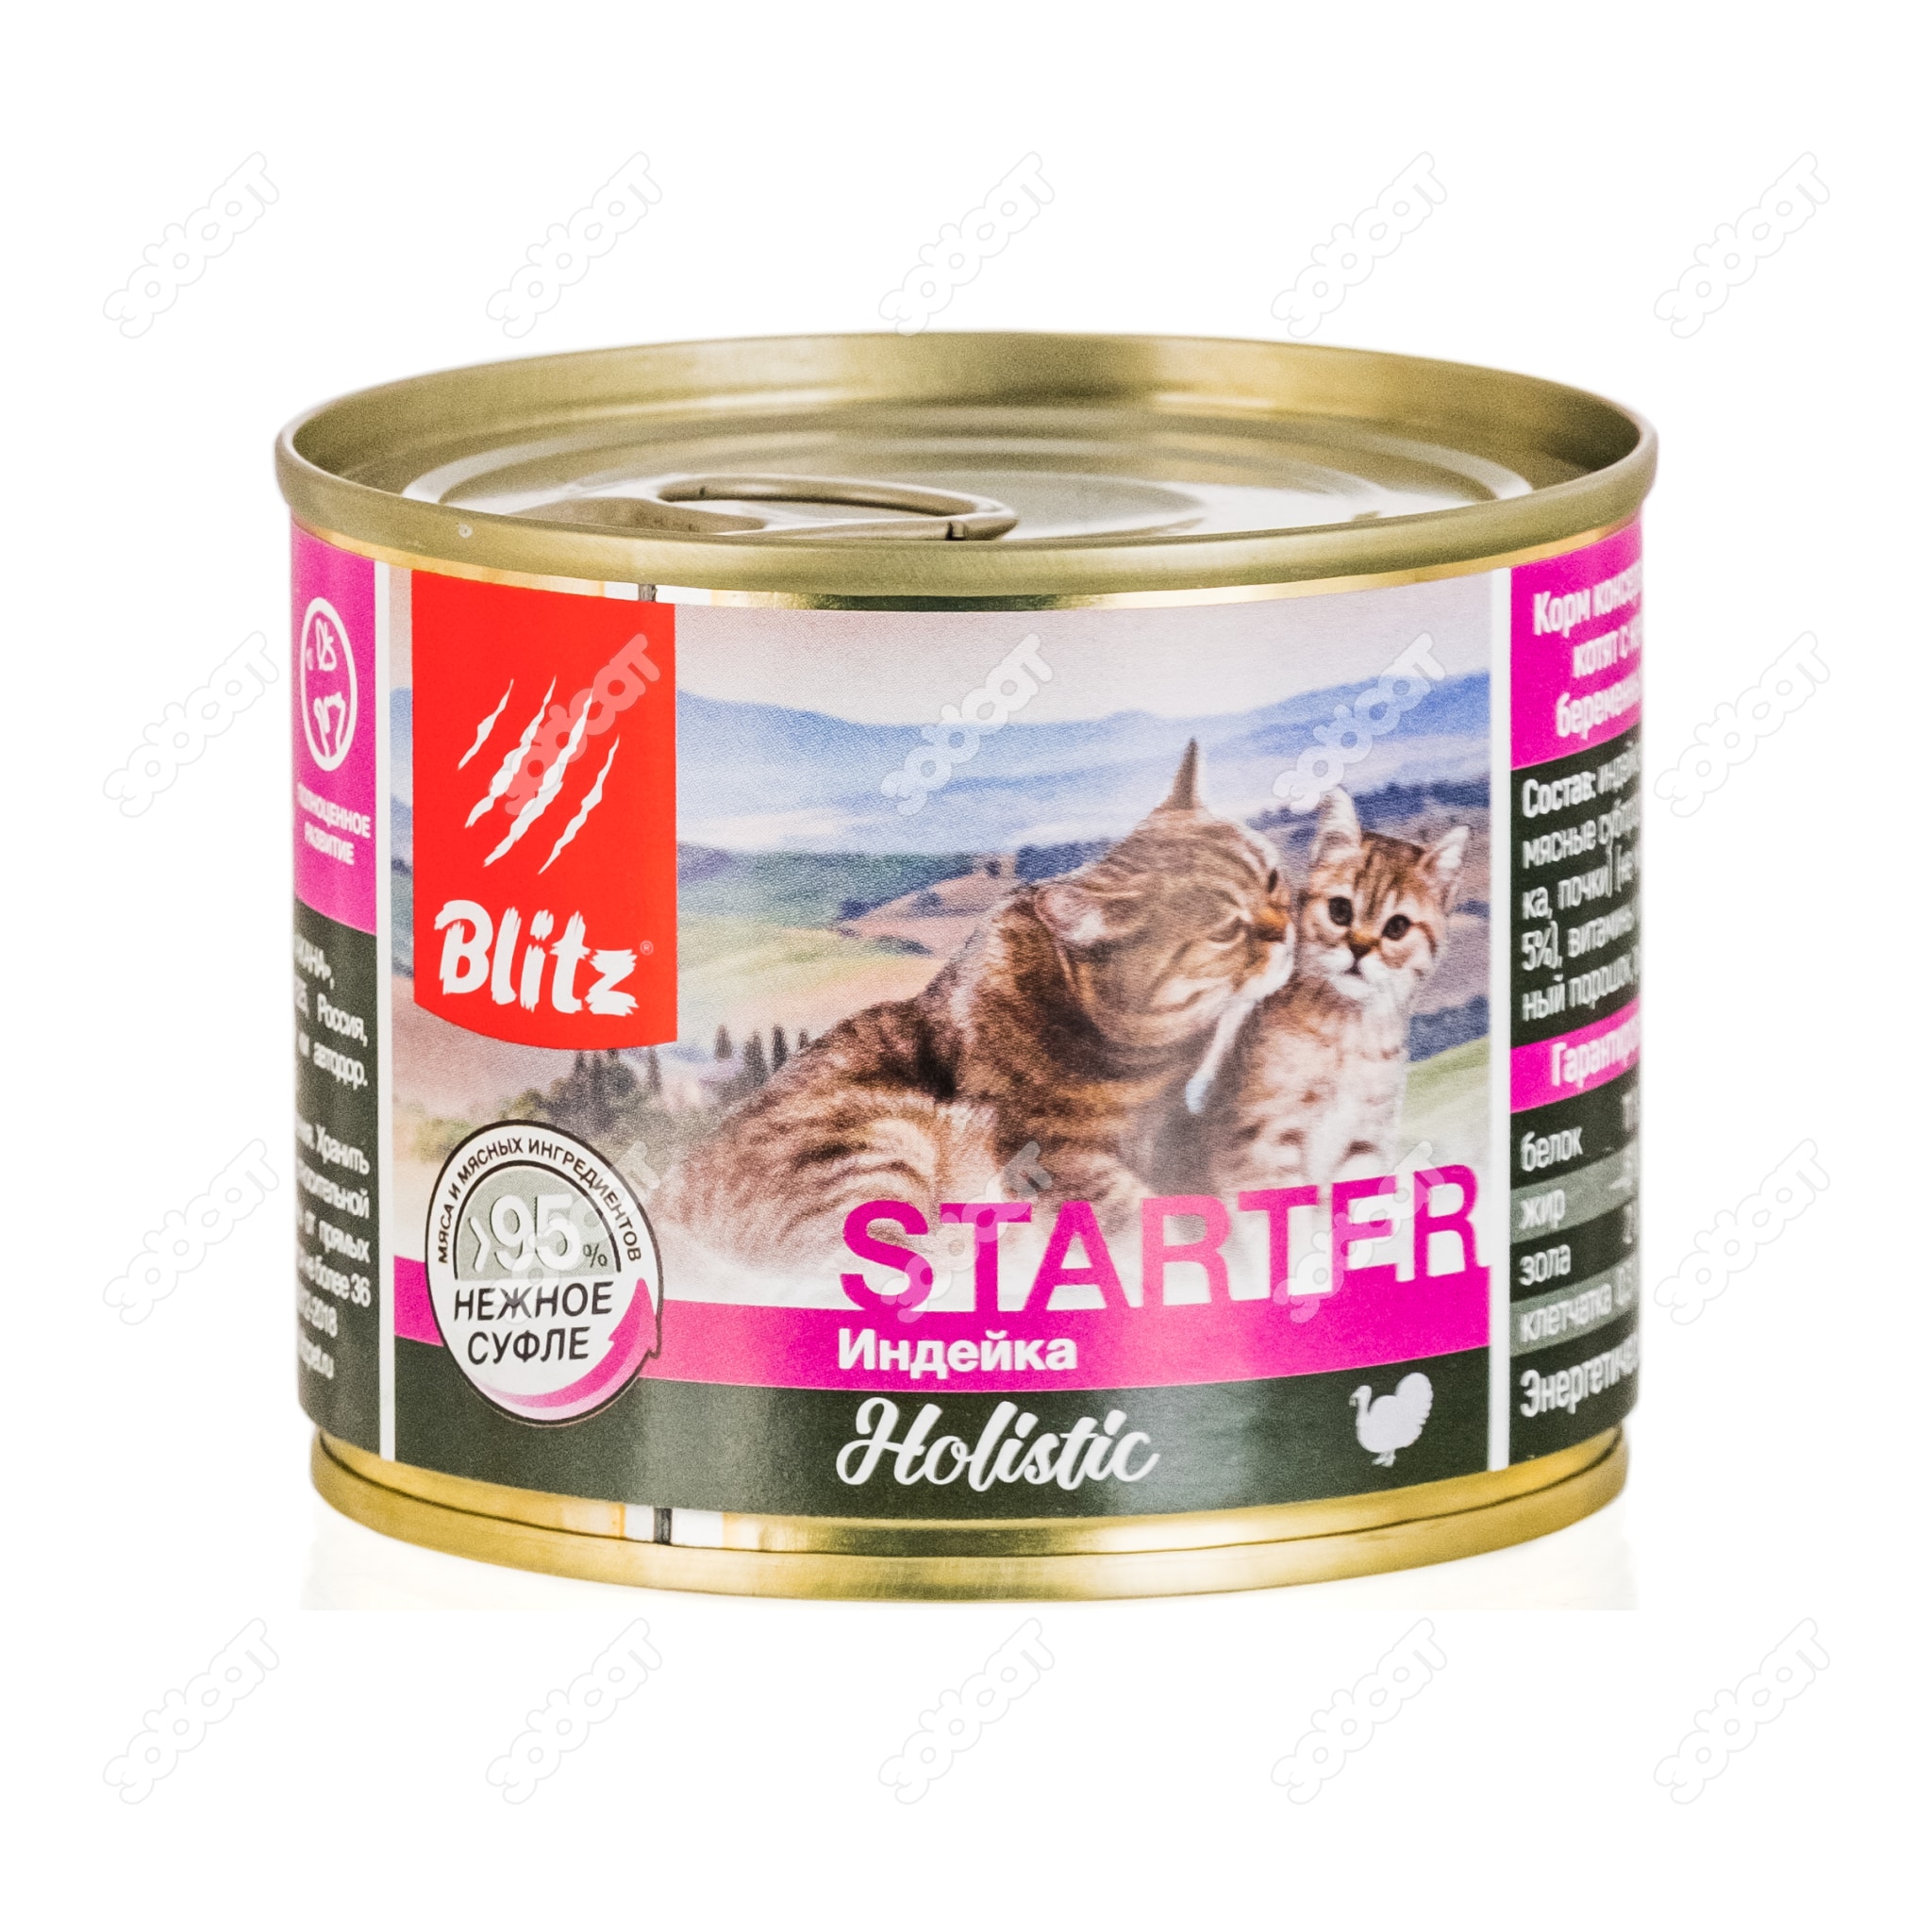 BLITZ STARTER HOLISTIC консервы для котят, беременных и кормящих кошек  (ИНДЕЙКА), 200 г. купить в Новосибирске с доставкой в интернет-магазине  ЗооСАТ